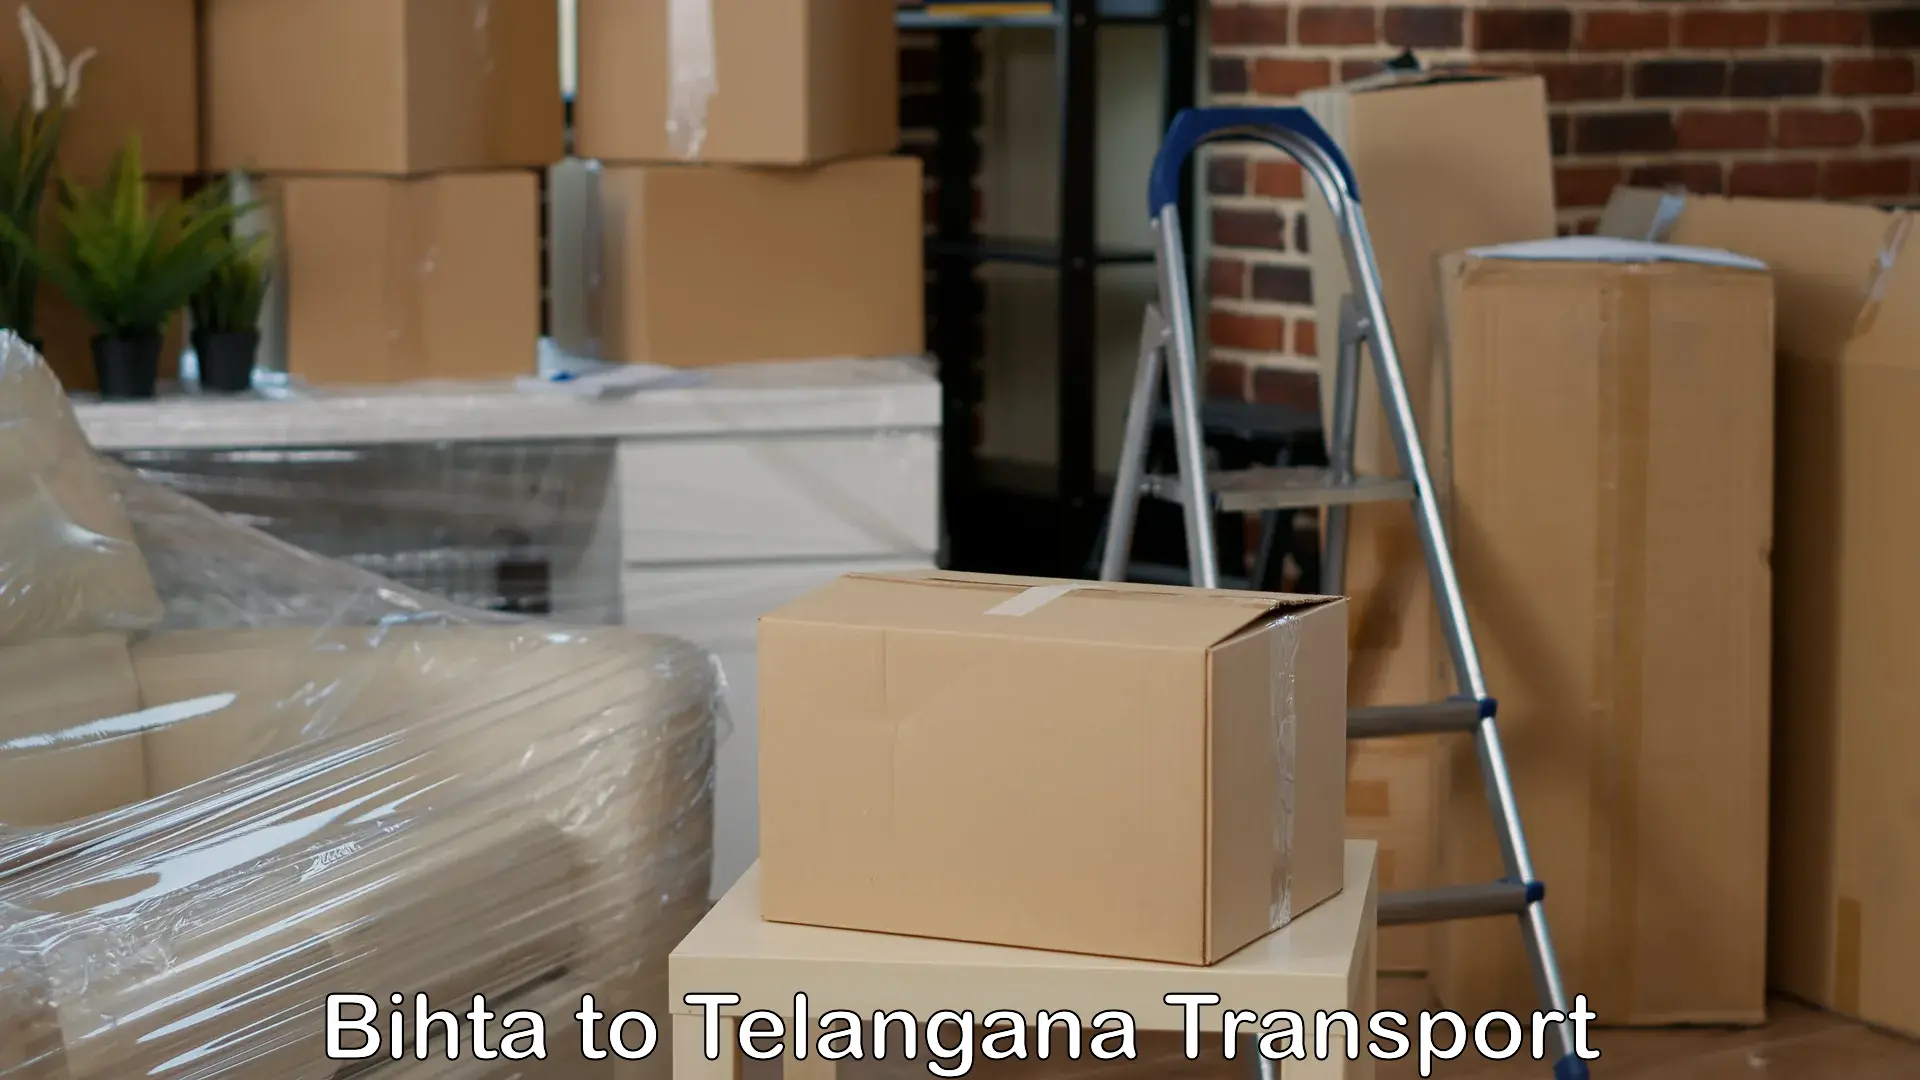 International cargo transportation services Bihta to Mahabubnagar